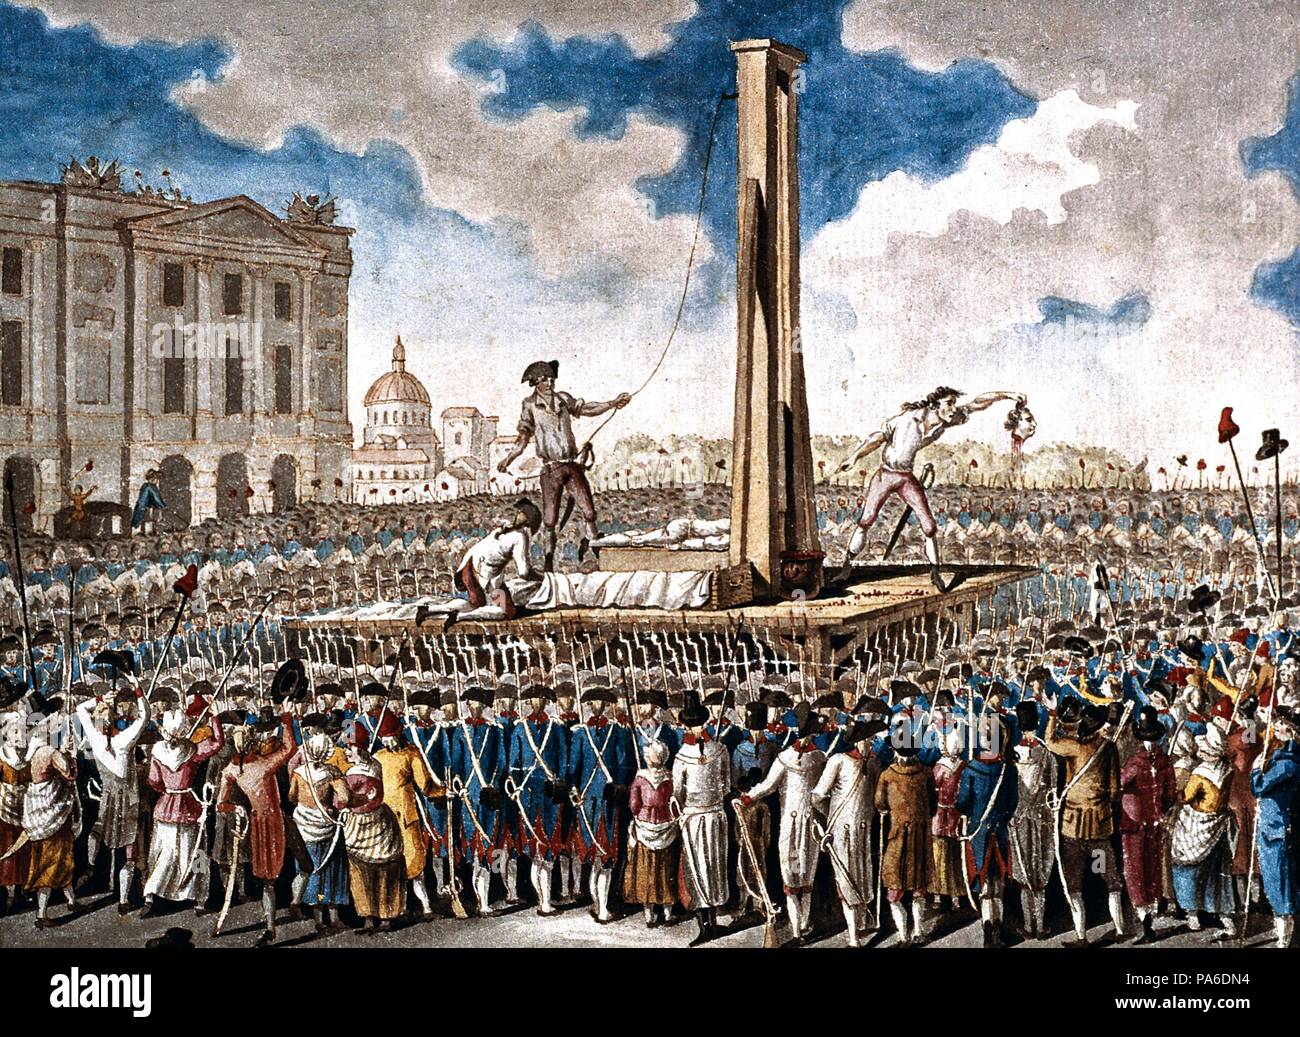 L'exécution de Louis XVI à la place de la révolution, le 21 janvier 1793. Musée : Musée Carnavalet, Paris Photo Stock - Alamy